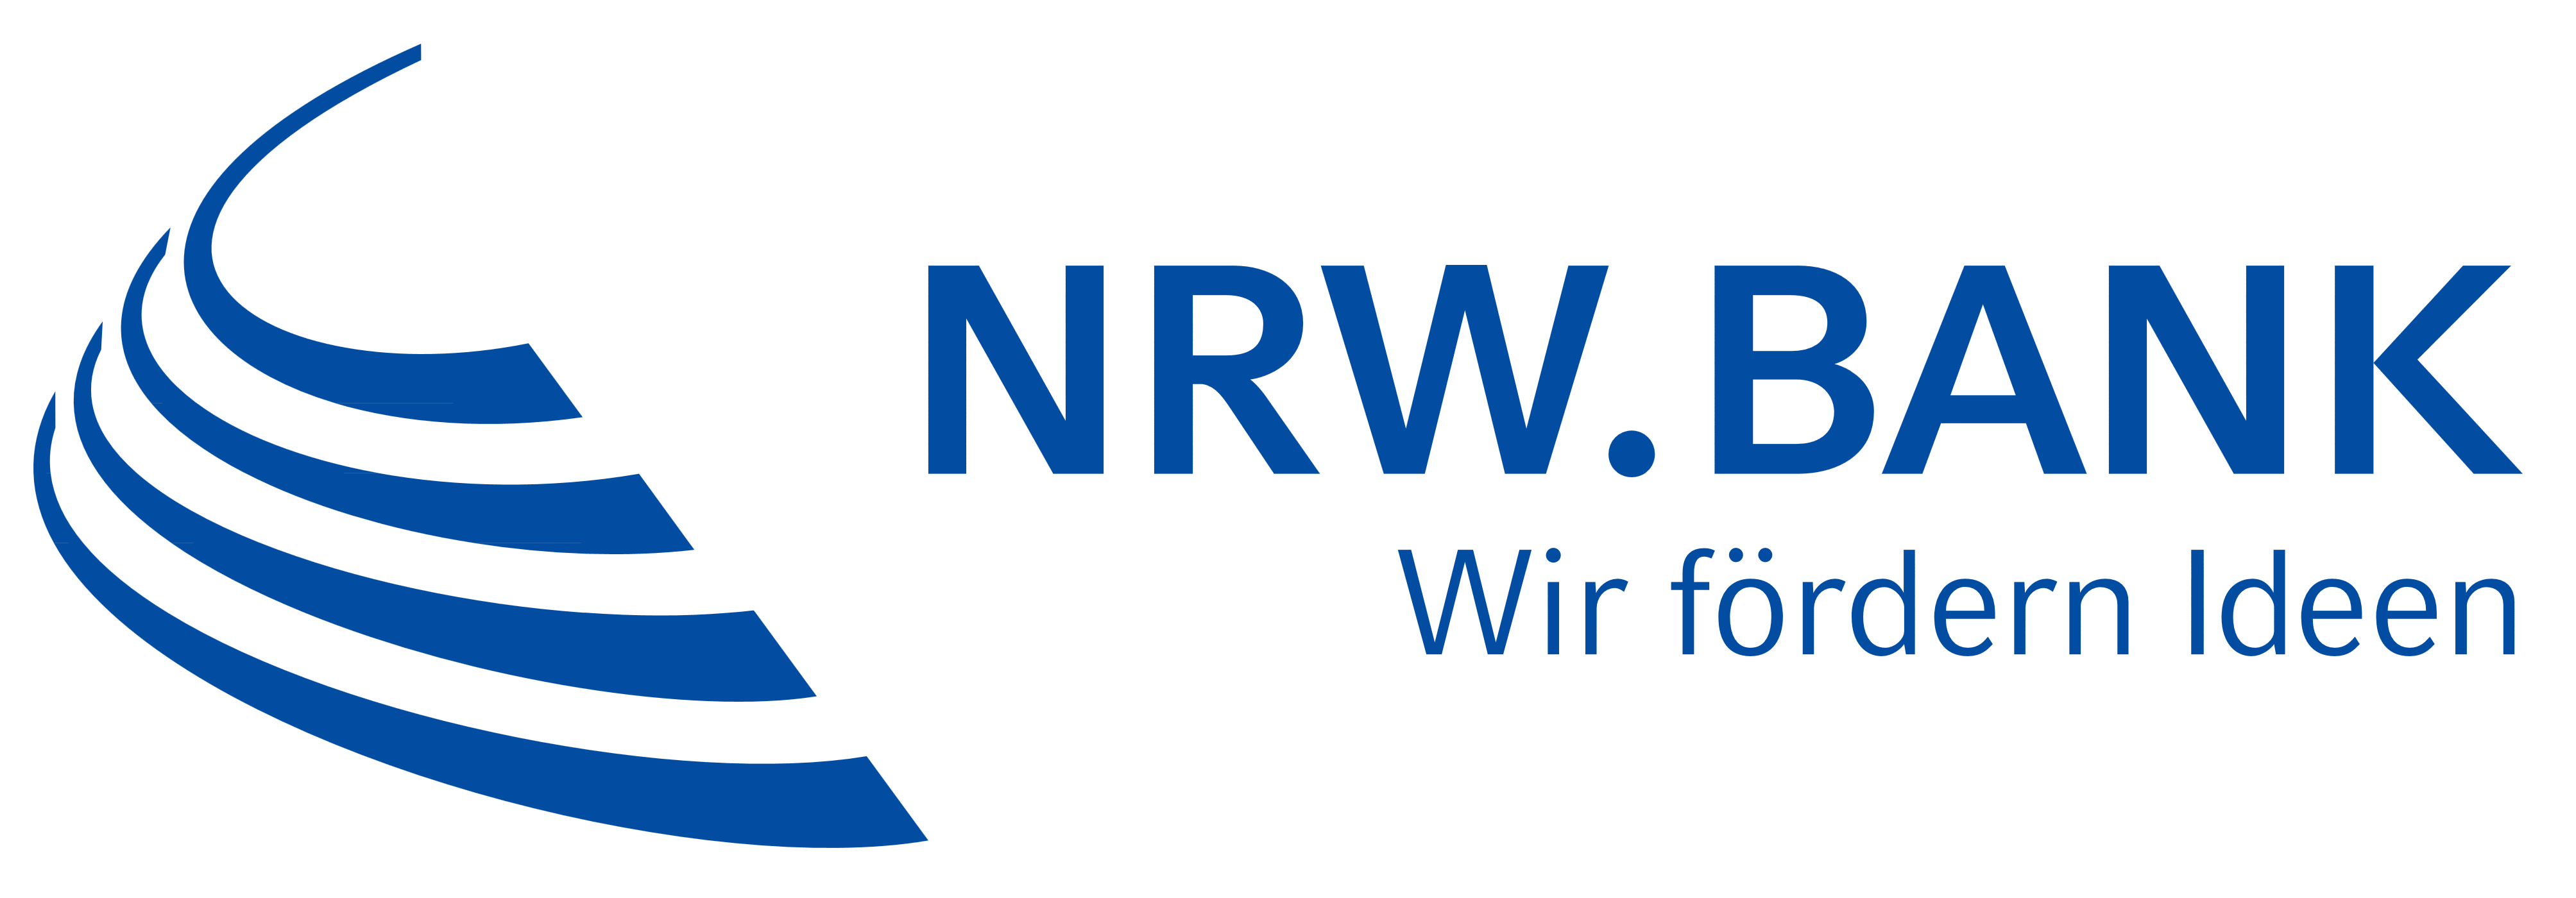 NRW Bank logo, logotype